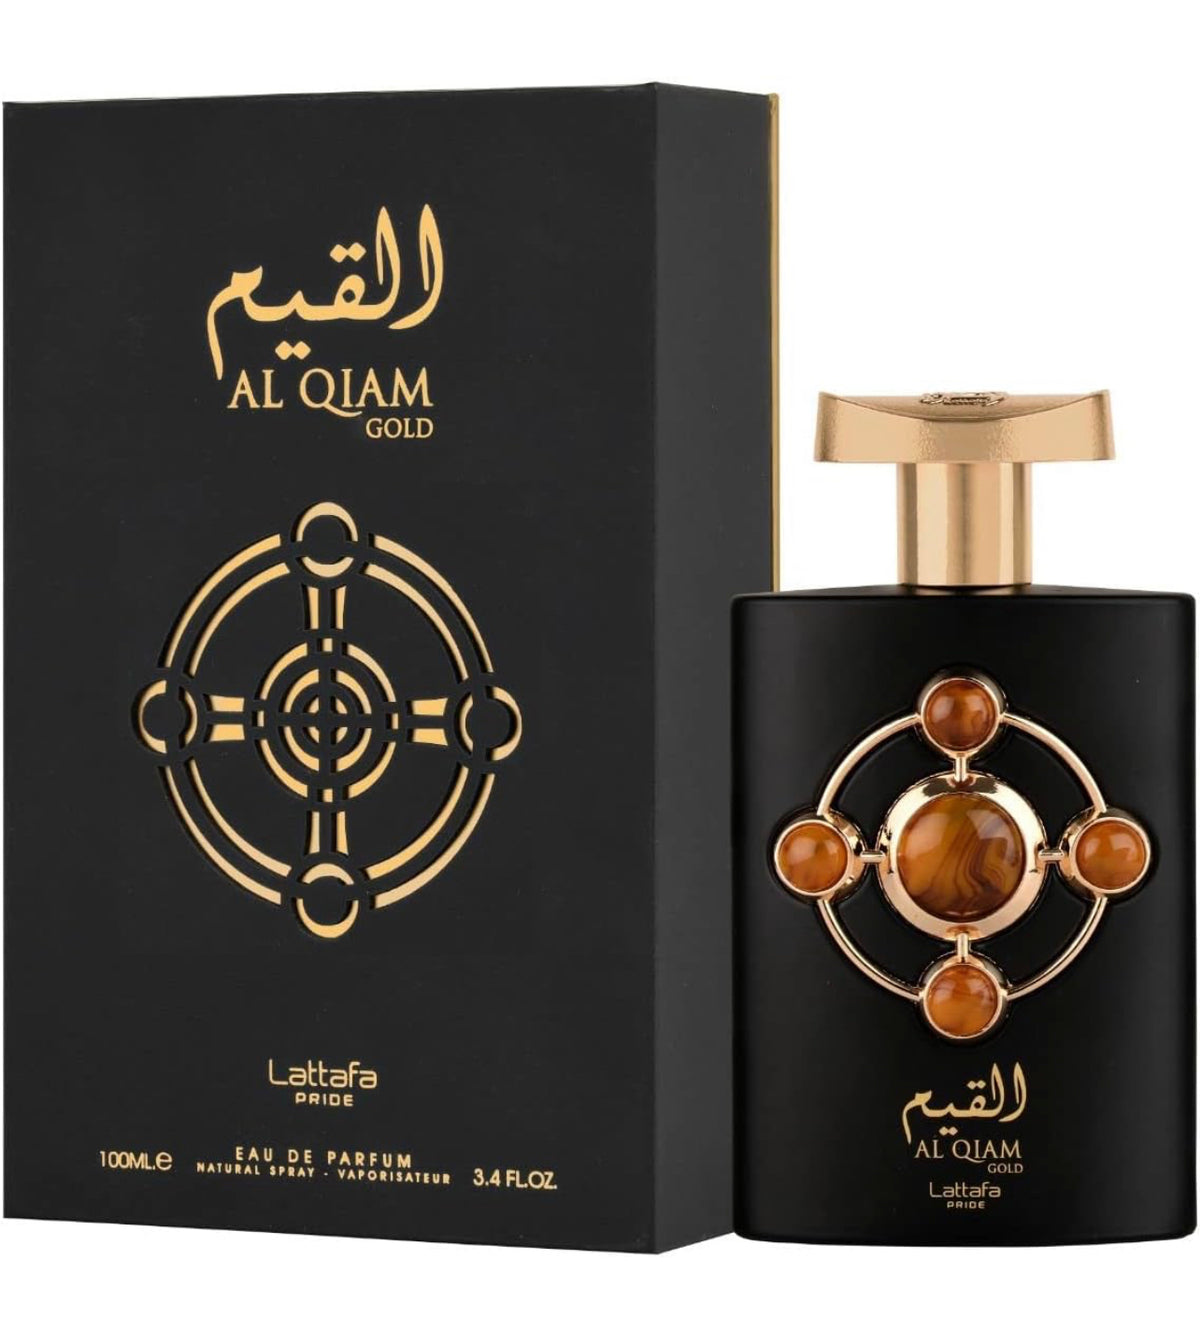 AL QIAM GOLD by Lataffa